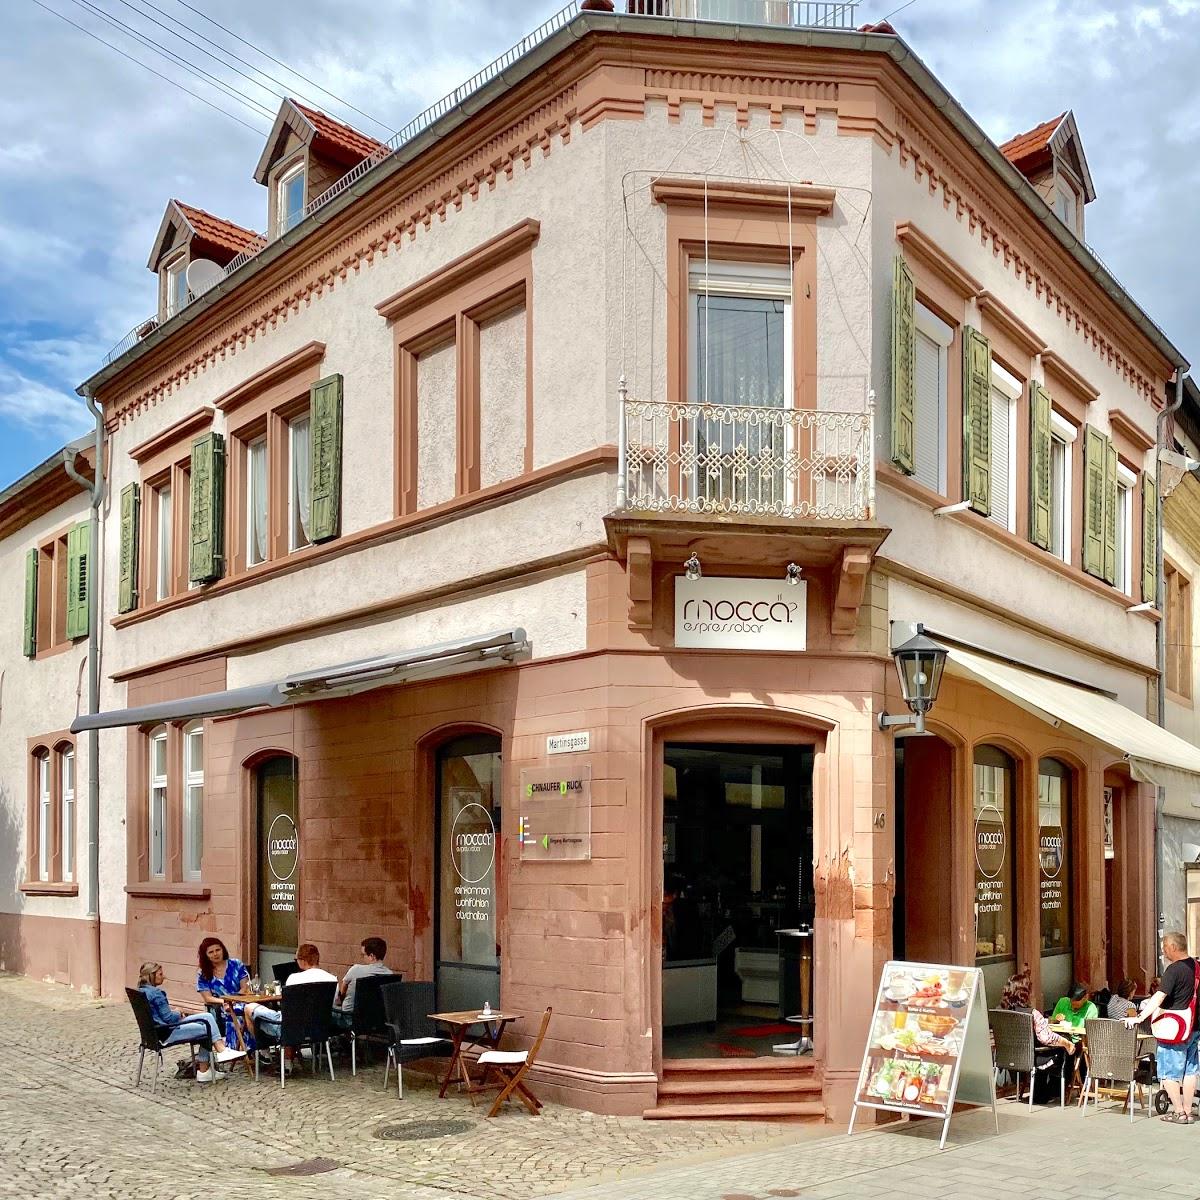 Restaurant "Mocca.espressobar" in Tauberbischofsheim